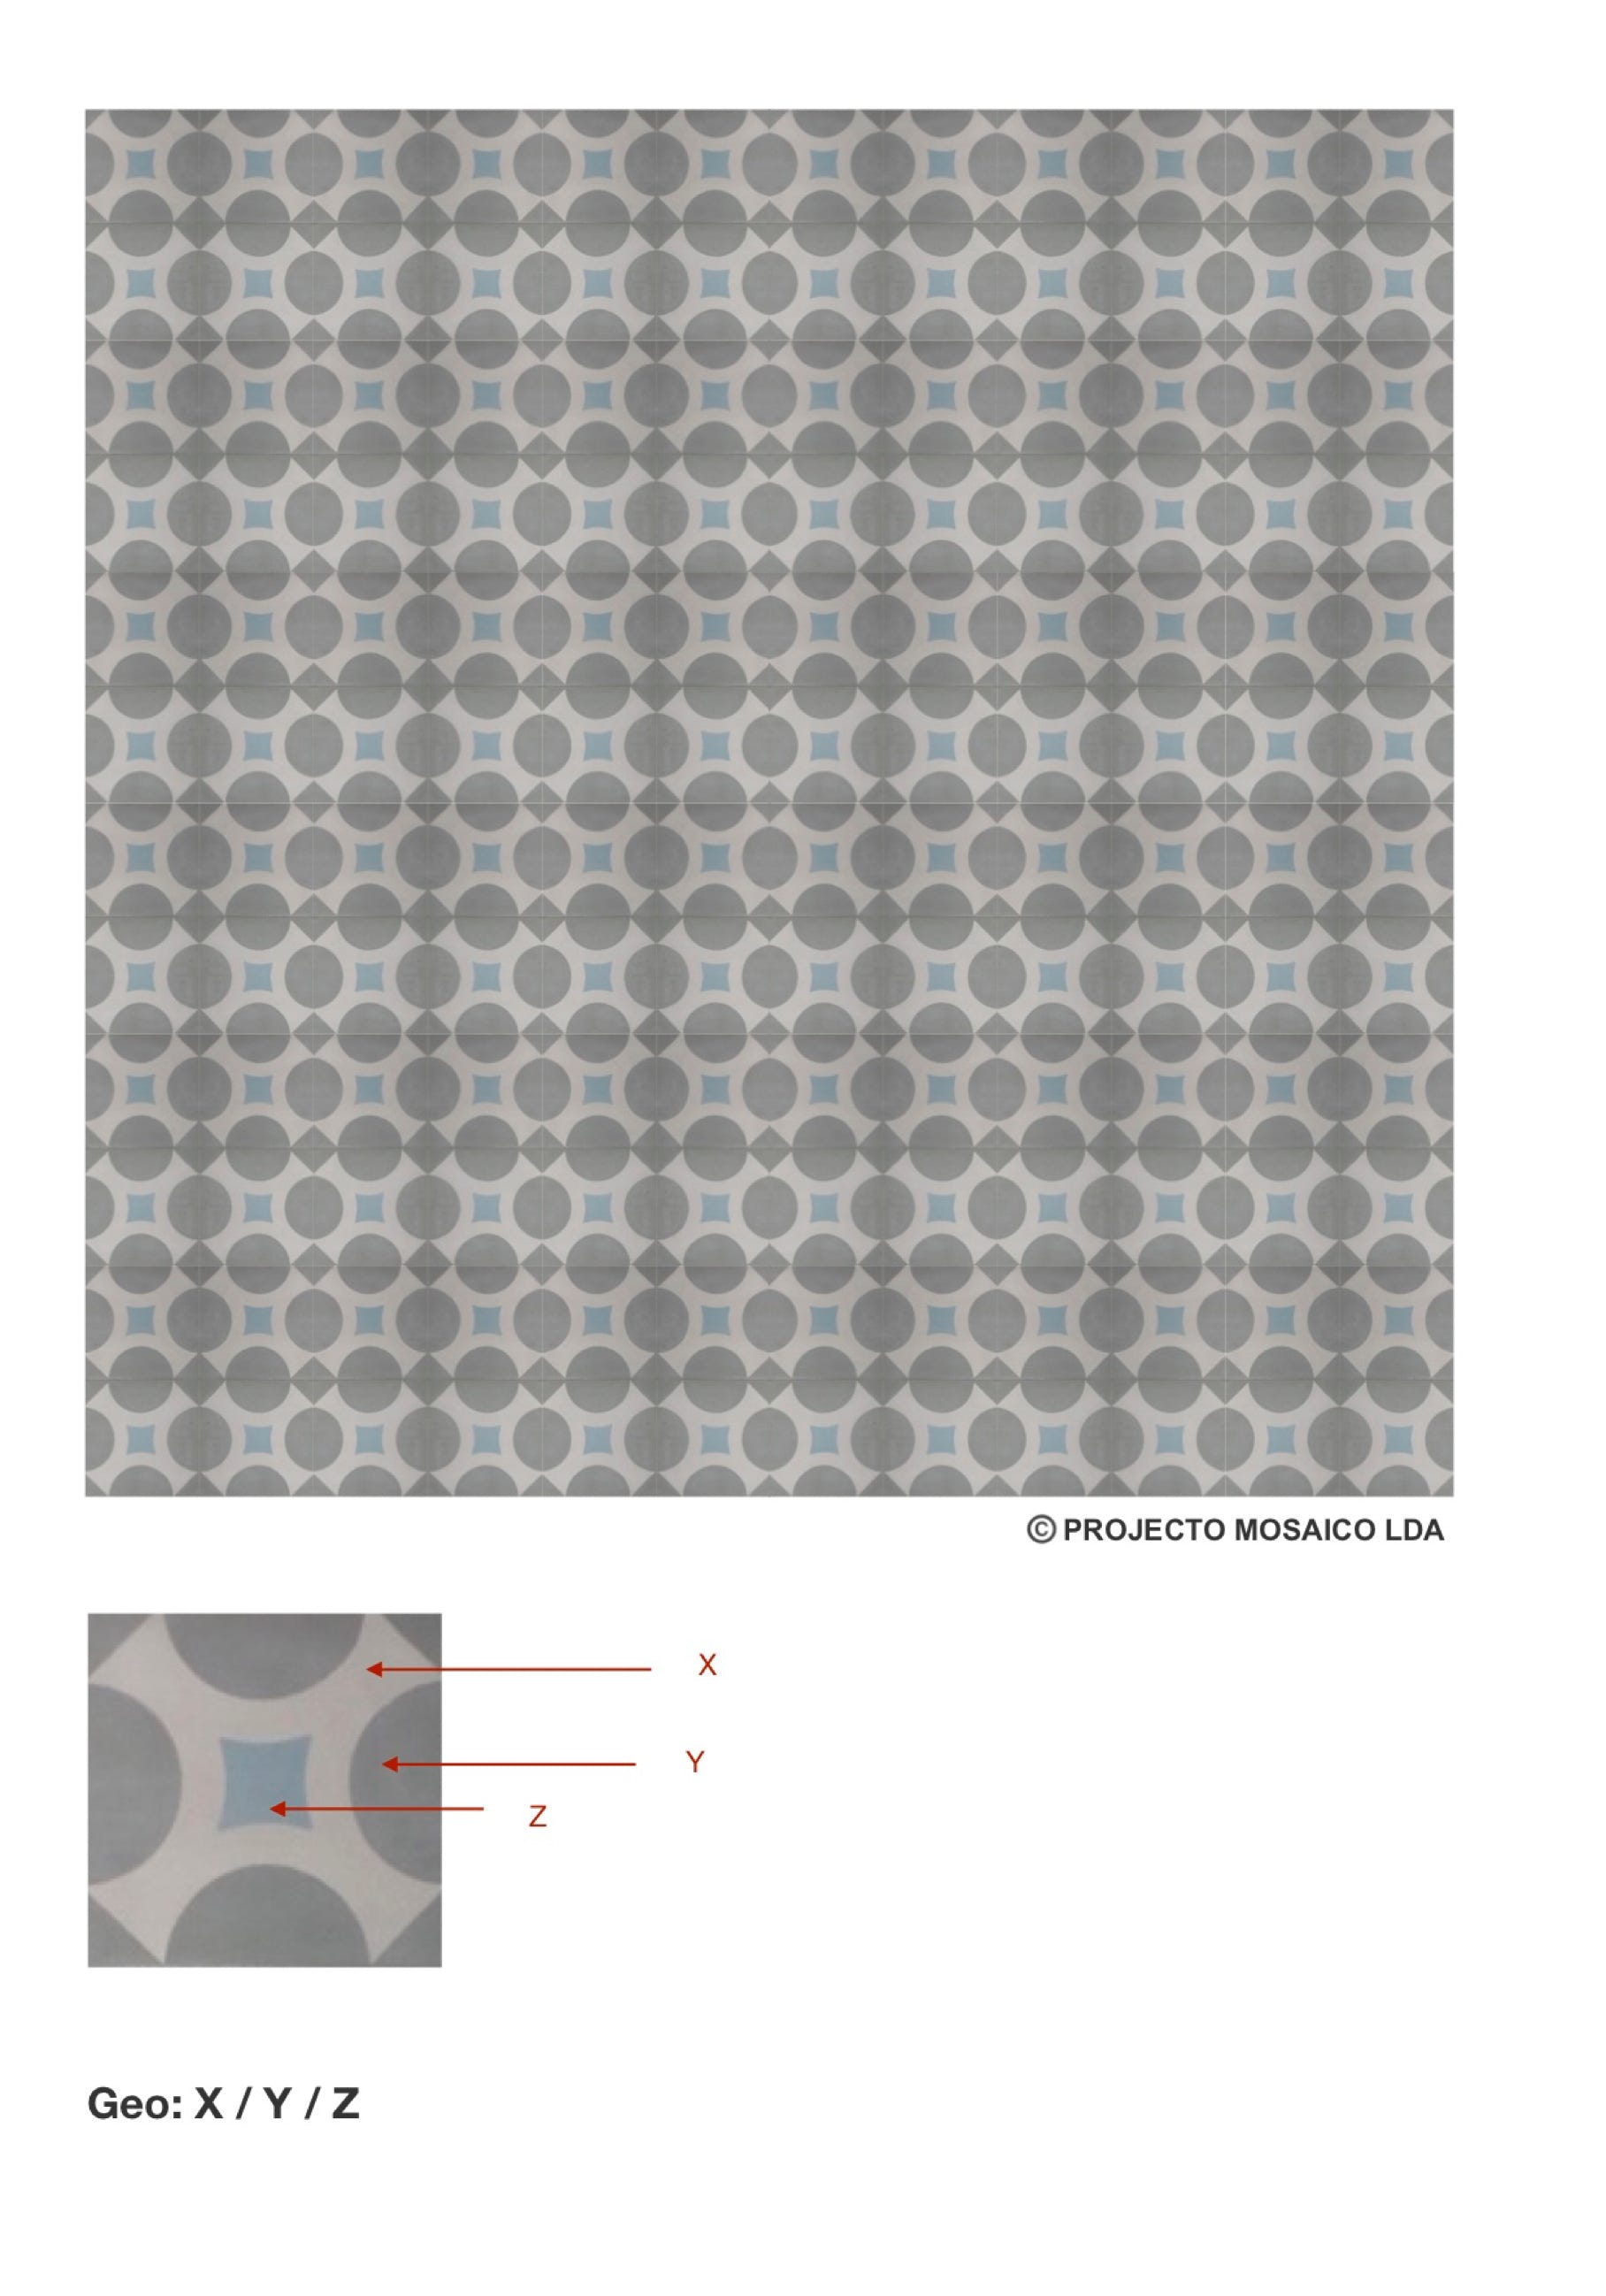 illustração de aplicação do mosaico hidráulico ref: Geo